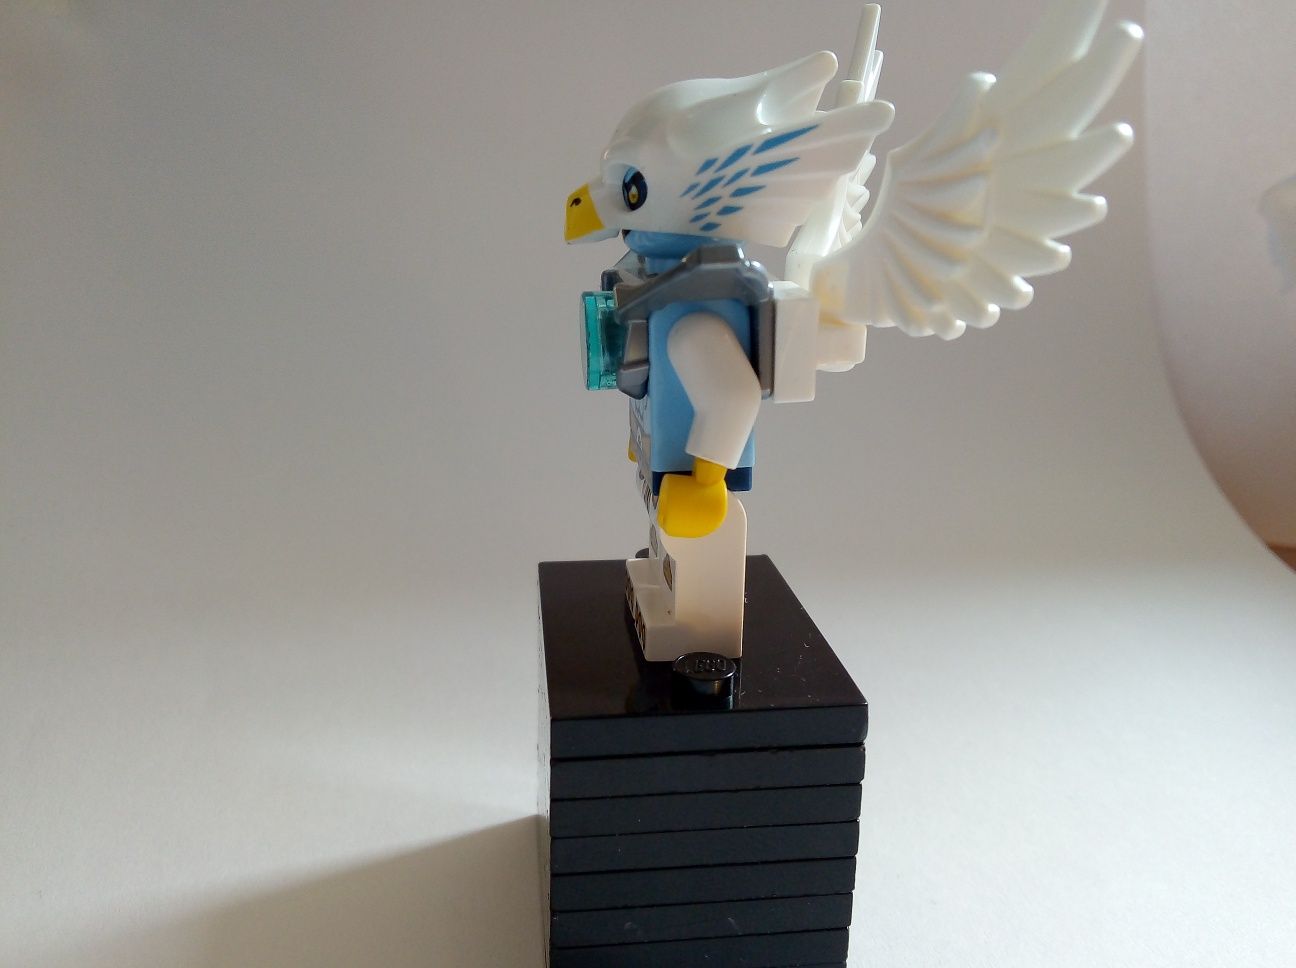 Lego minifigure - dobra postać z serialu lego